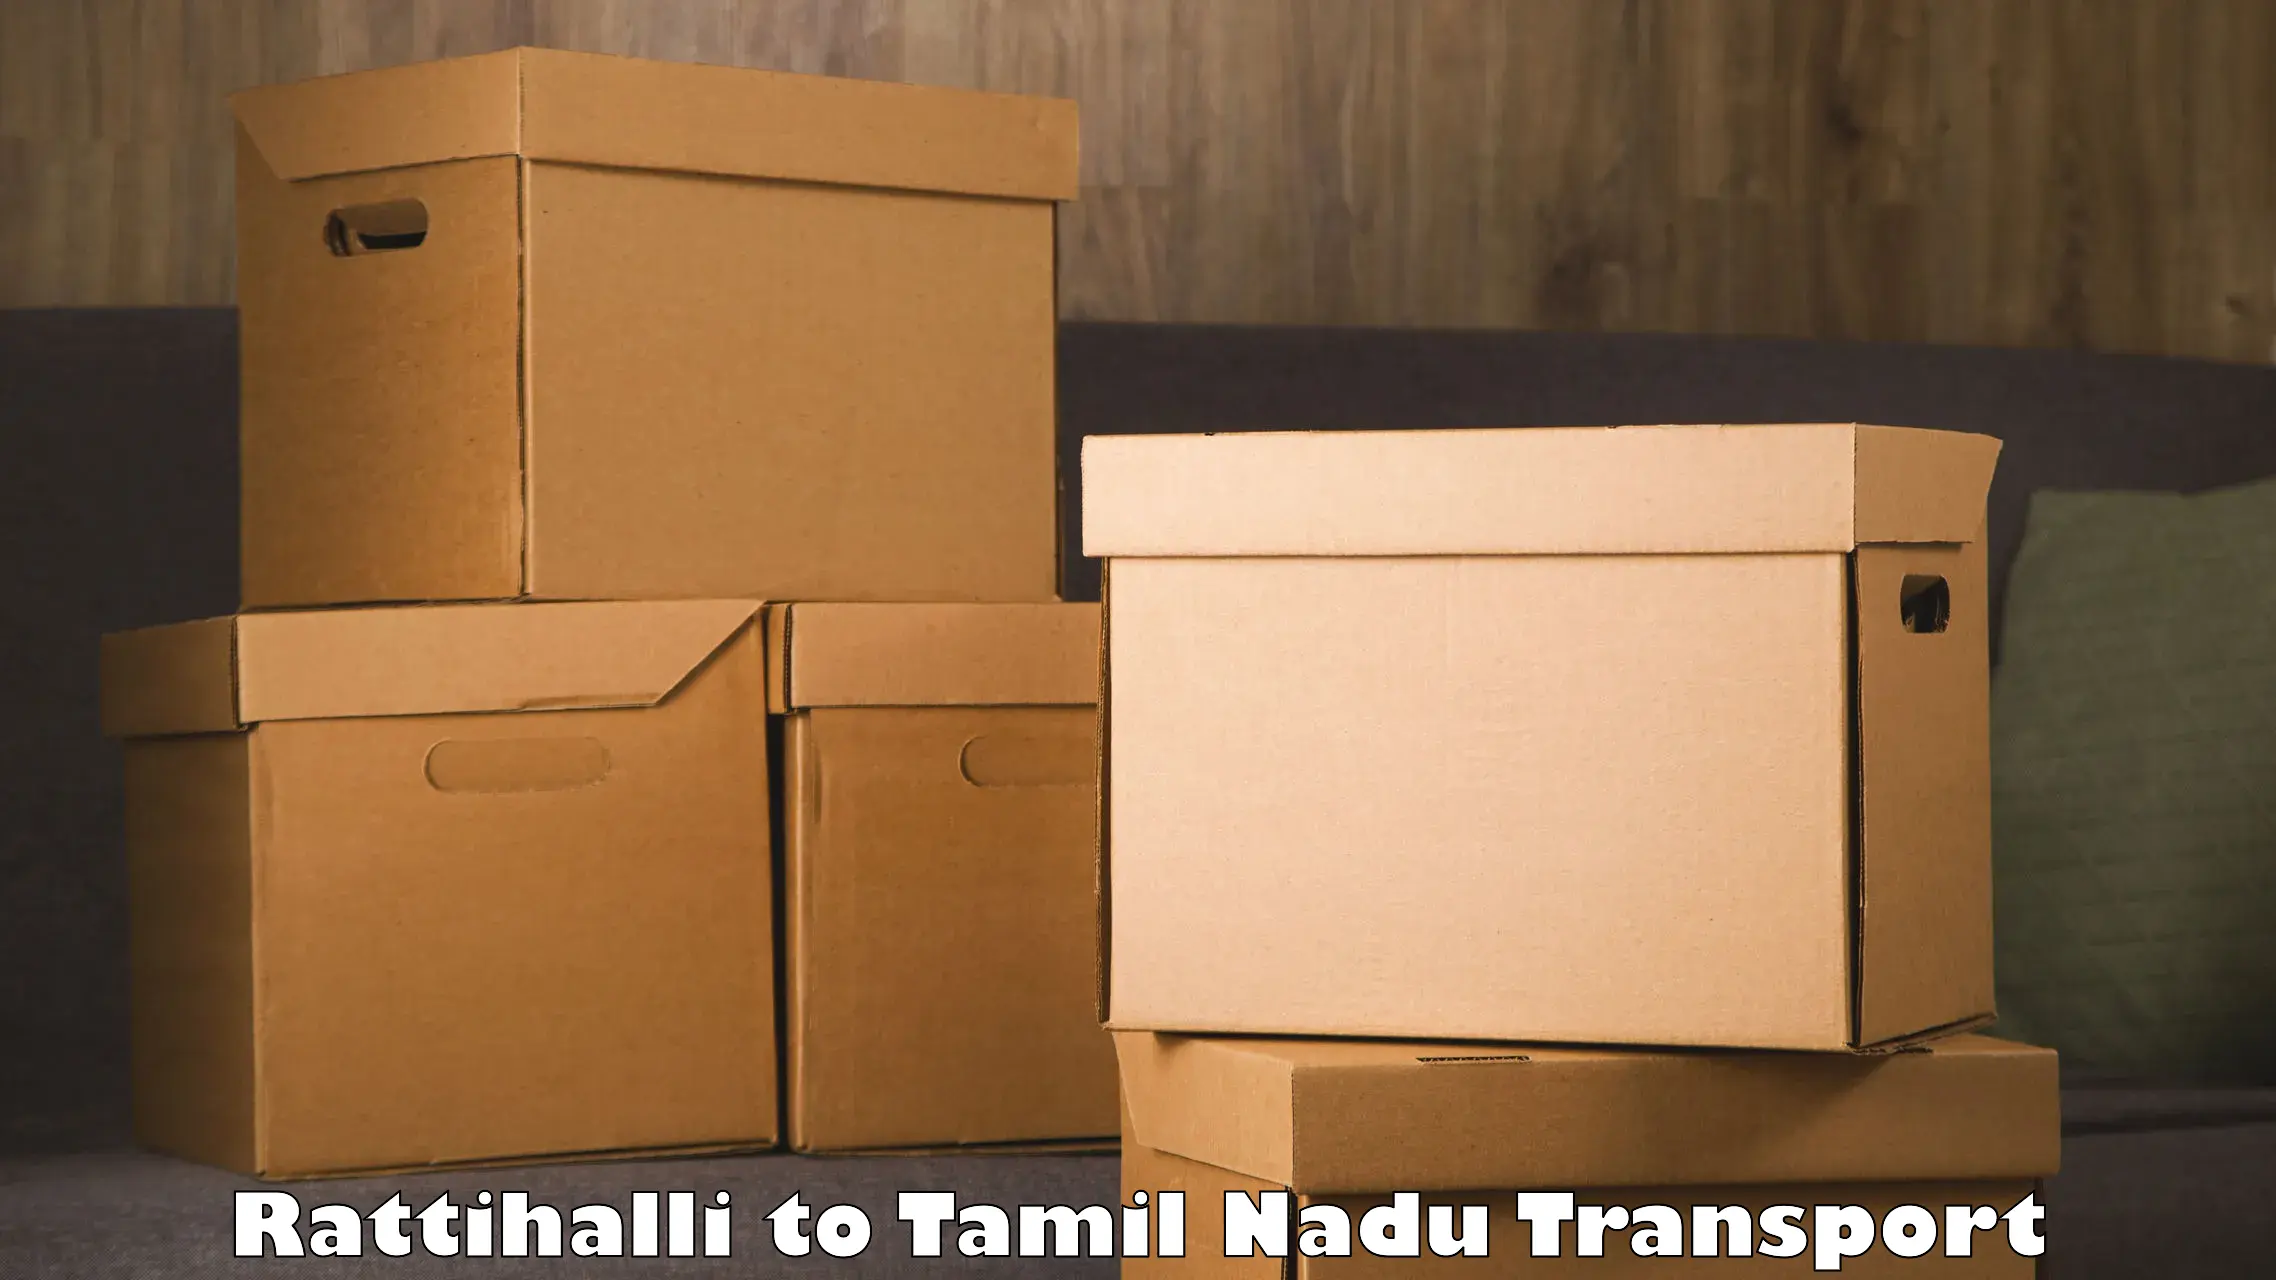 Express transport services Rattihalli to Tamil Nadu